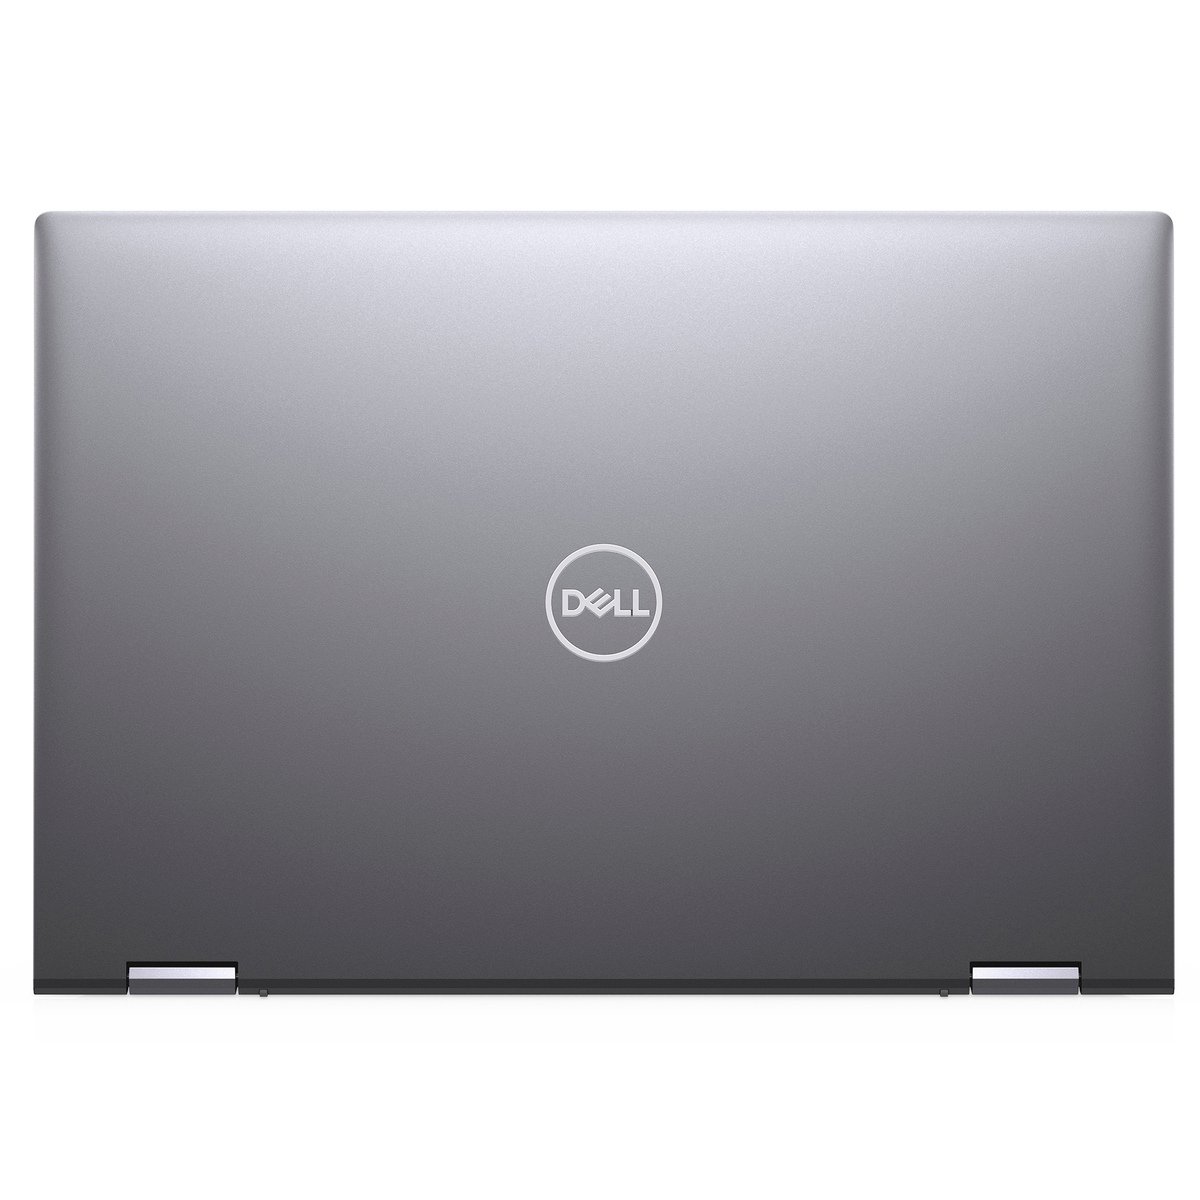 Dell Inspiron 14 (5406-INS-5046-GRY)2in1 Laptop,Intel i3 1115G4 TGL-U,4GB RAM,256GB SSD,Intel TGL-U UHD UMA,14" FHD Touch Screen,Grey